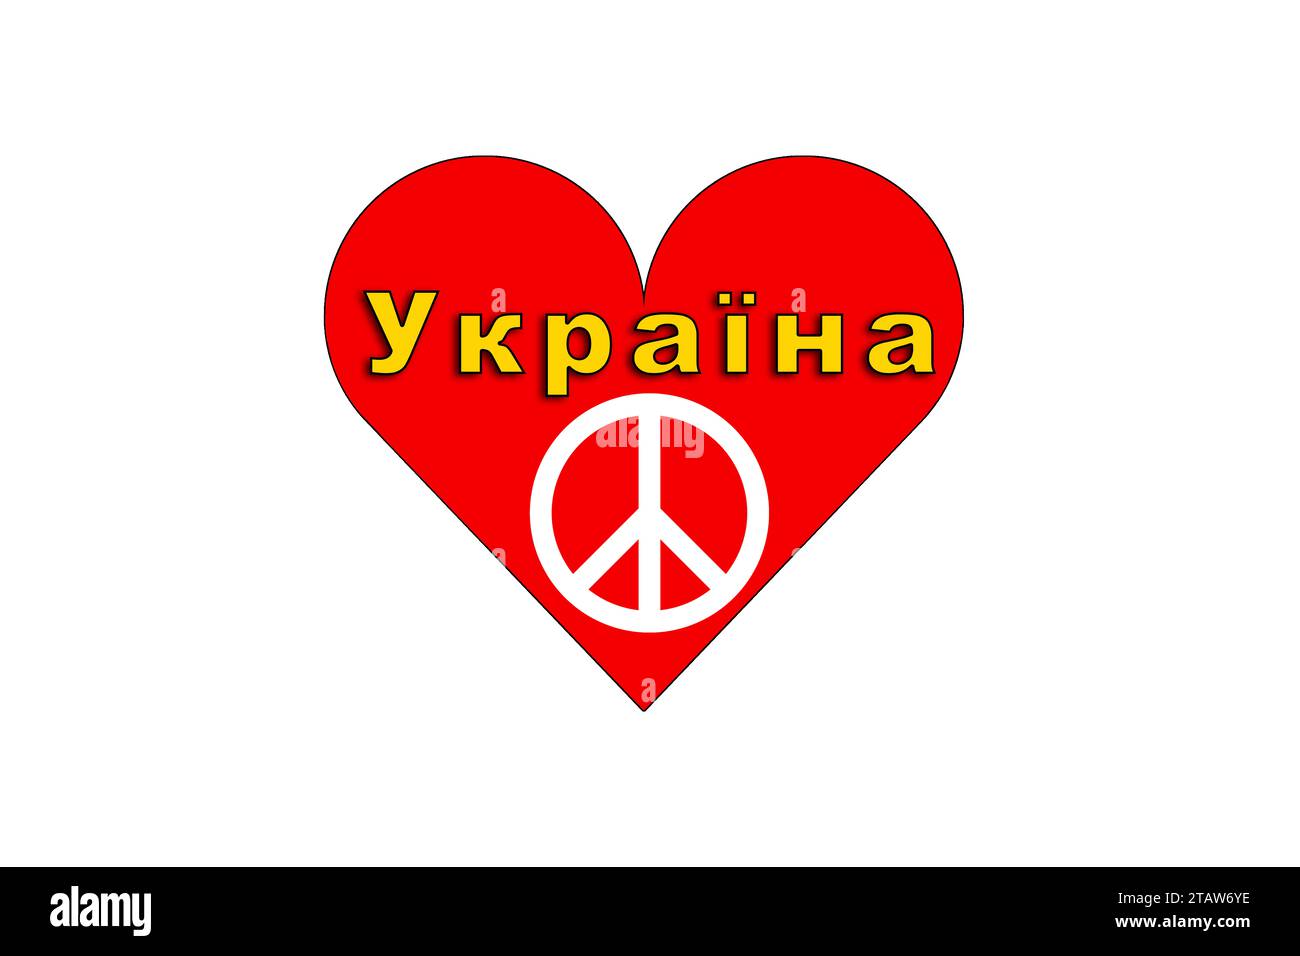 Ucraina, il nome del paese, grafica illustrata del logo della pace e del cuore per il popolo ucraino Foto Stock